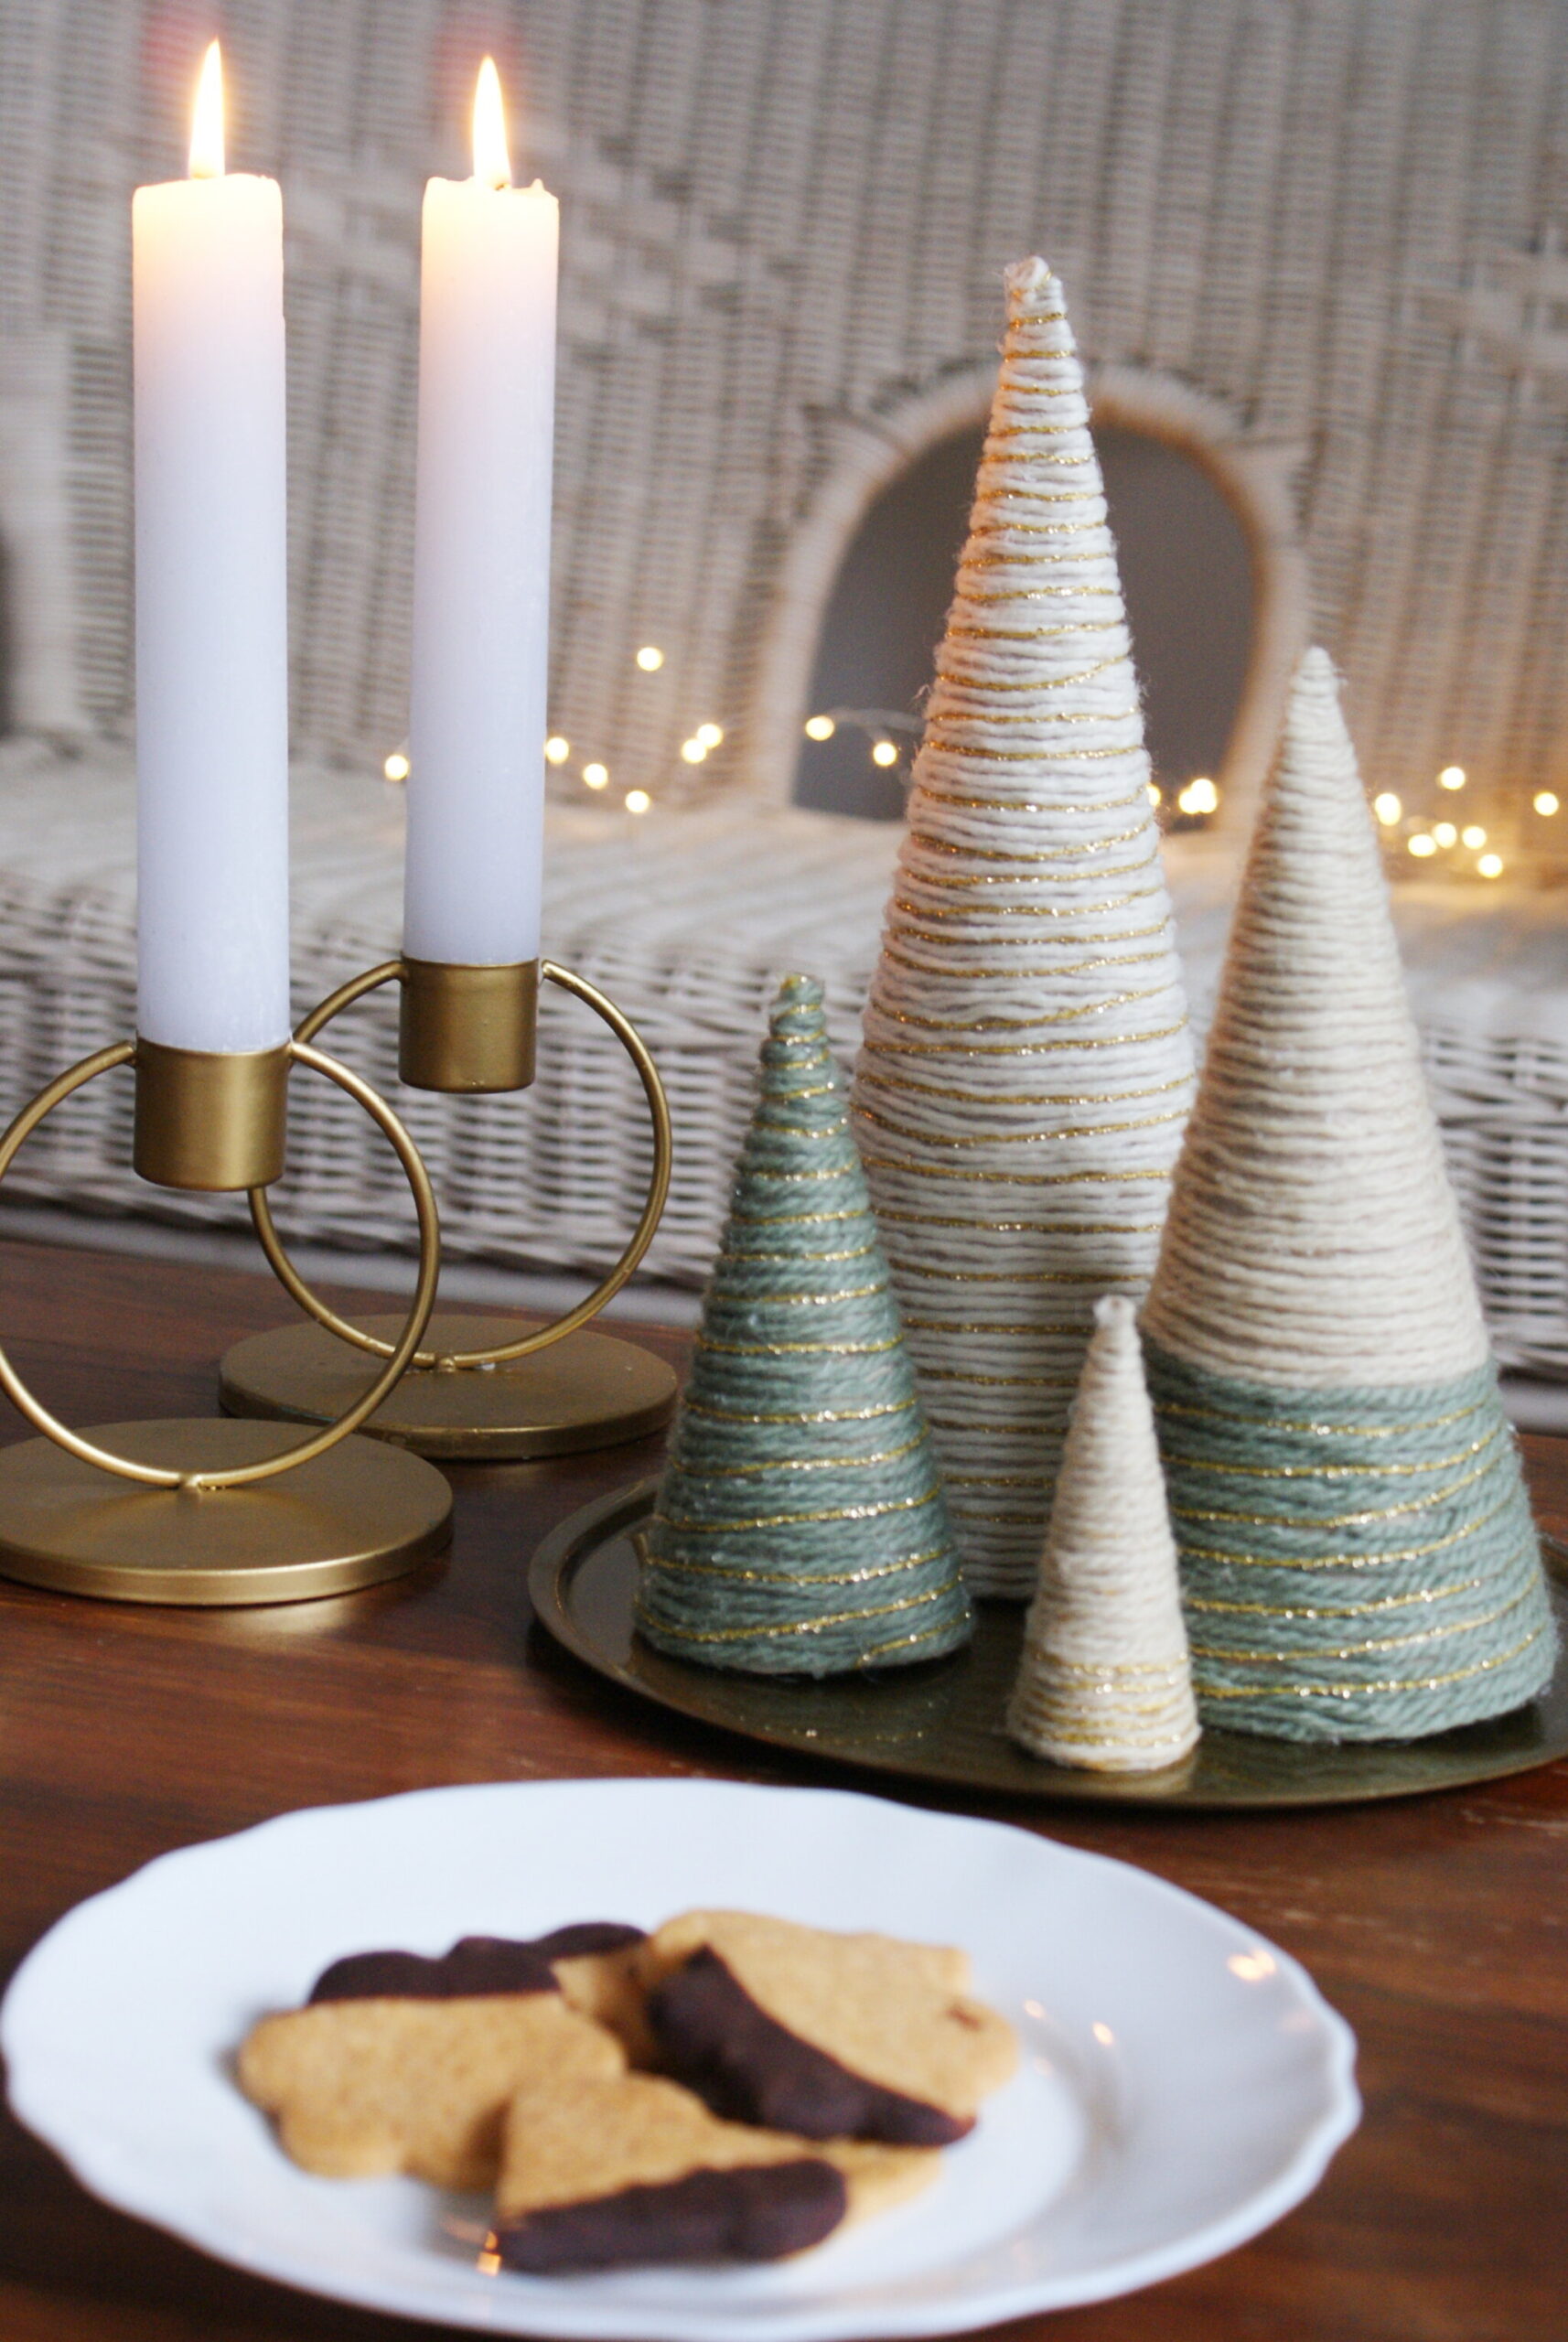 diy yarn christmas tree wool wrapped easy quick simple last minute decoration idea francinesplaceblog handmade minimalist